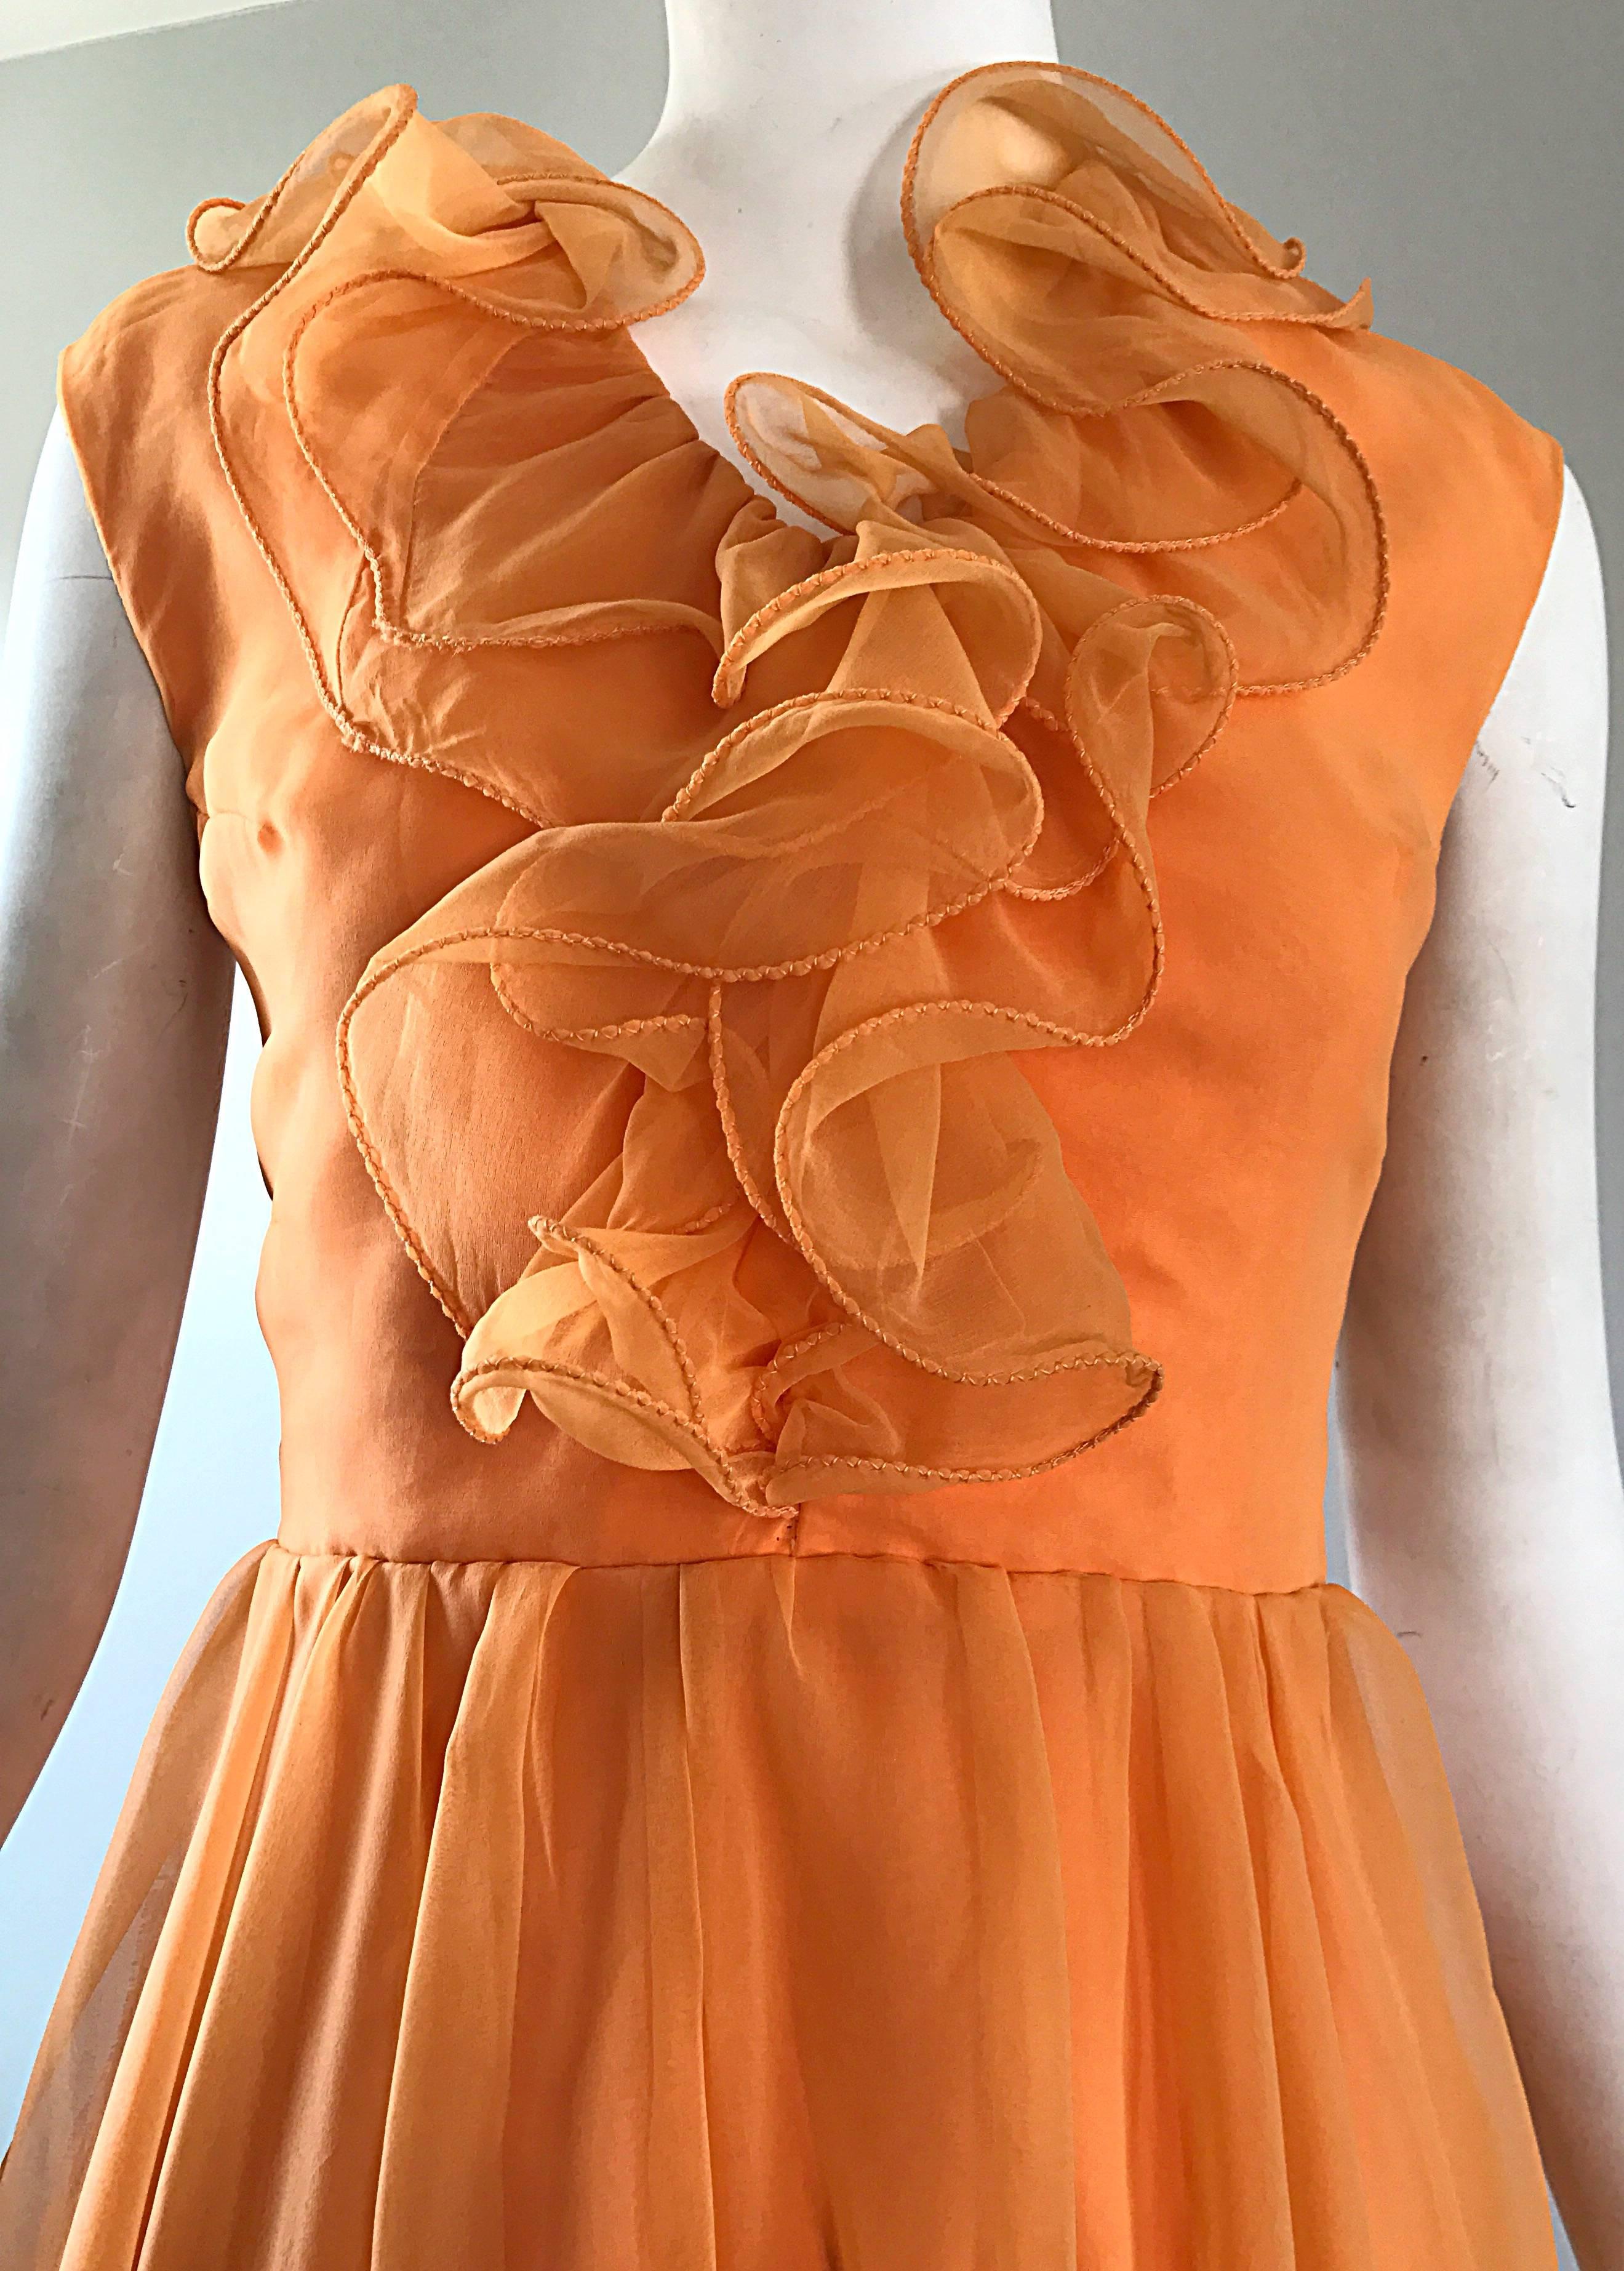 Schickes 1960er Sorbert orange chiffon overlay ruffle detaillierte Kleid! Mit einem taillierten Mieder und einem schmeichelhaften, vollen Rock. Durchgehender Metallreißverschluss auf der Rückseite mit Haken- und Ösenverschluss. Vollständig